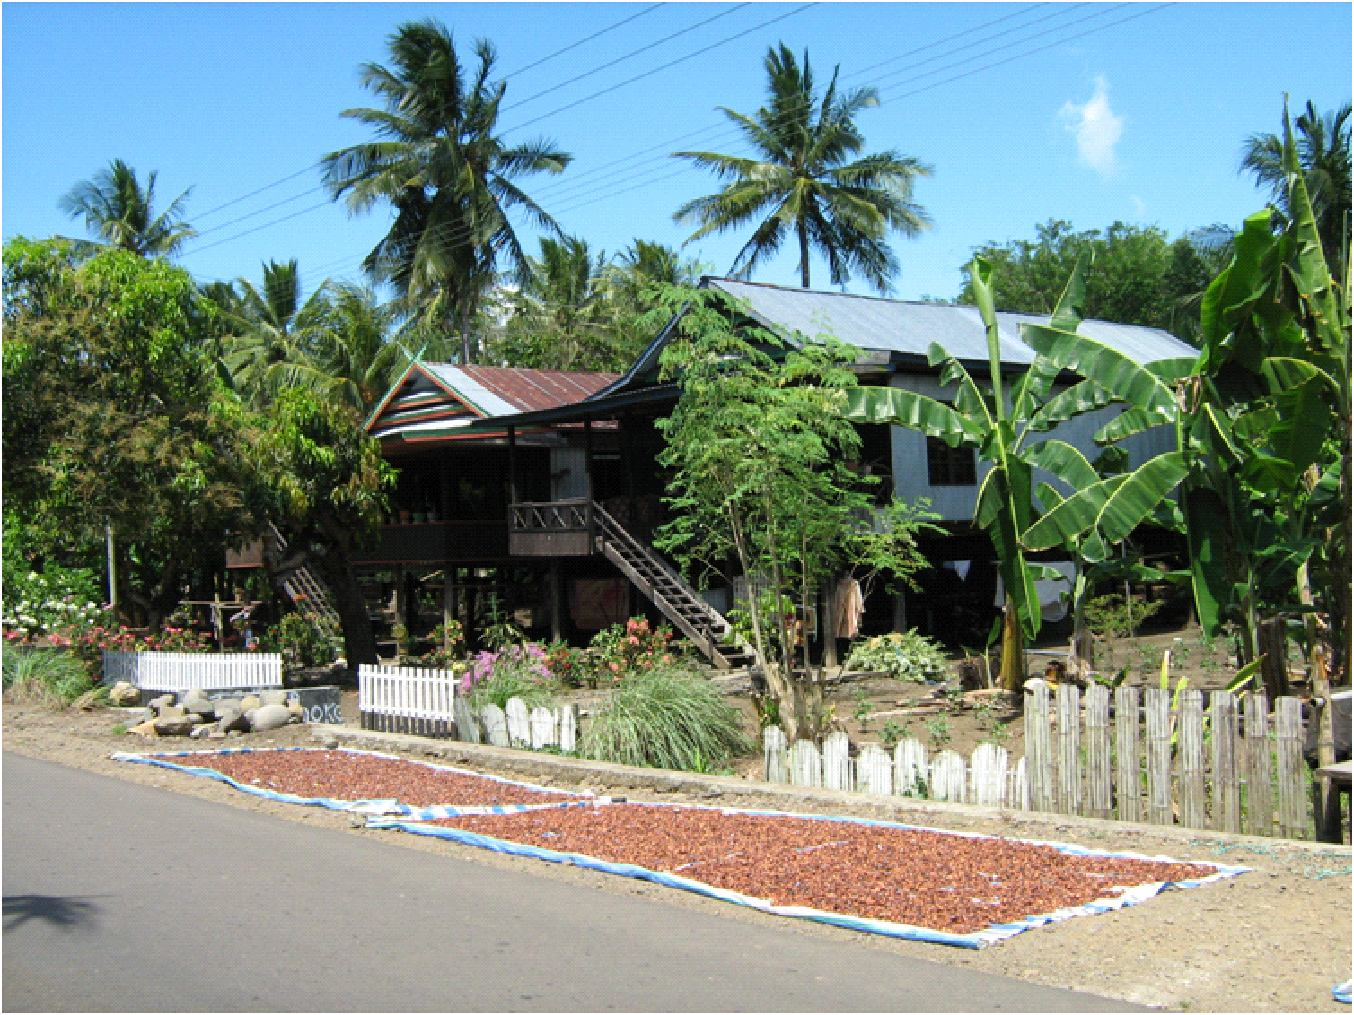 Potensi Ekonomi Kakao sebagai Sumber Pendapatan Petani Lya Aklimawati 1) 1) Pusat Penelitian Kopi dan Kakao Indonesia, Jl. PB.